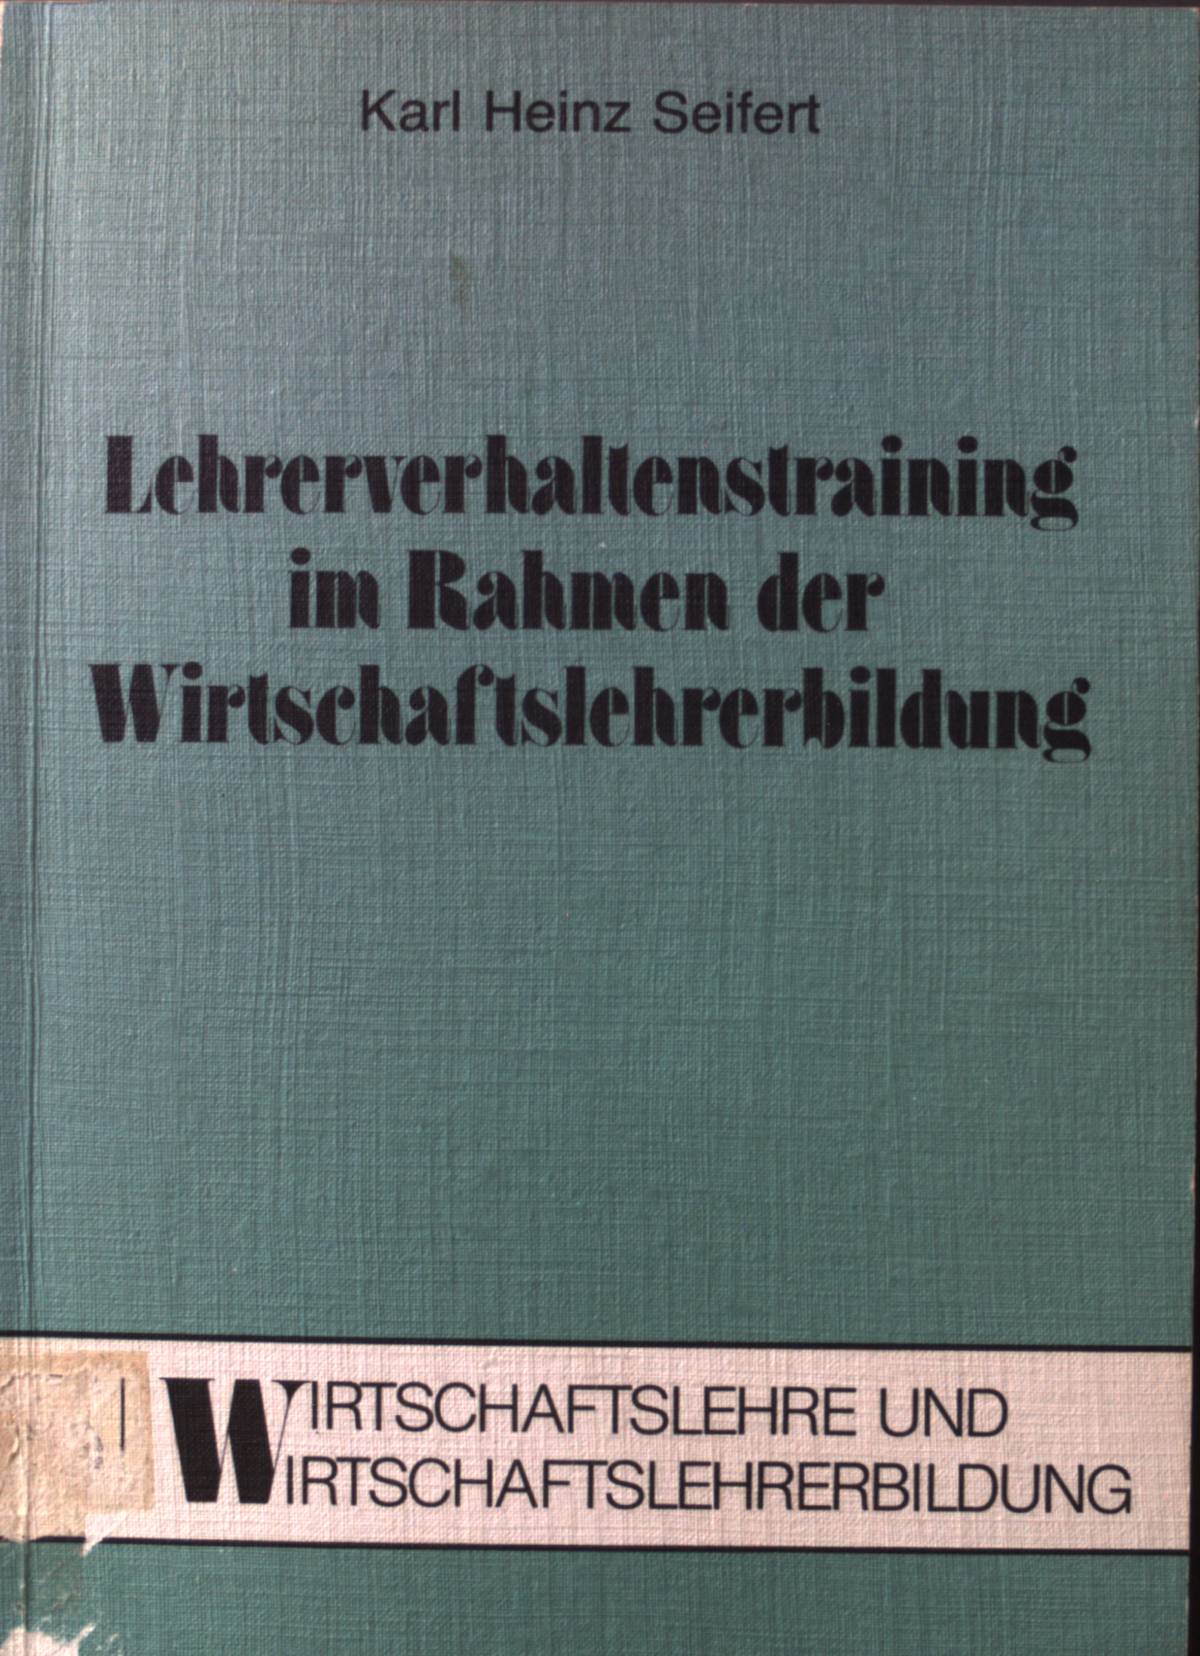 Lehrerverhaltenstraining im Rahmen der Wirtschaftslehrerbildung. Wirtschaftslehre und Wirtschaftslehrerbildung ; Bd. 5 - Seifert, Karl Heinz